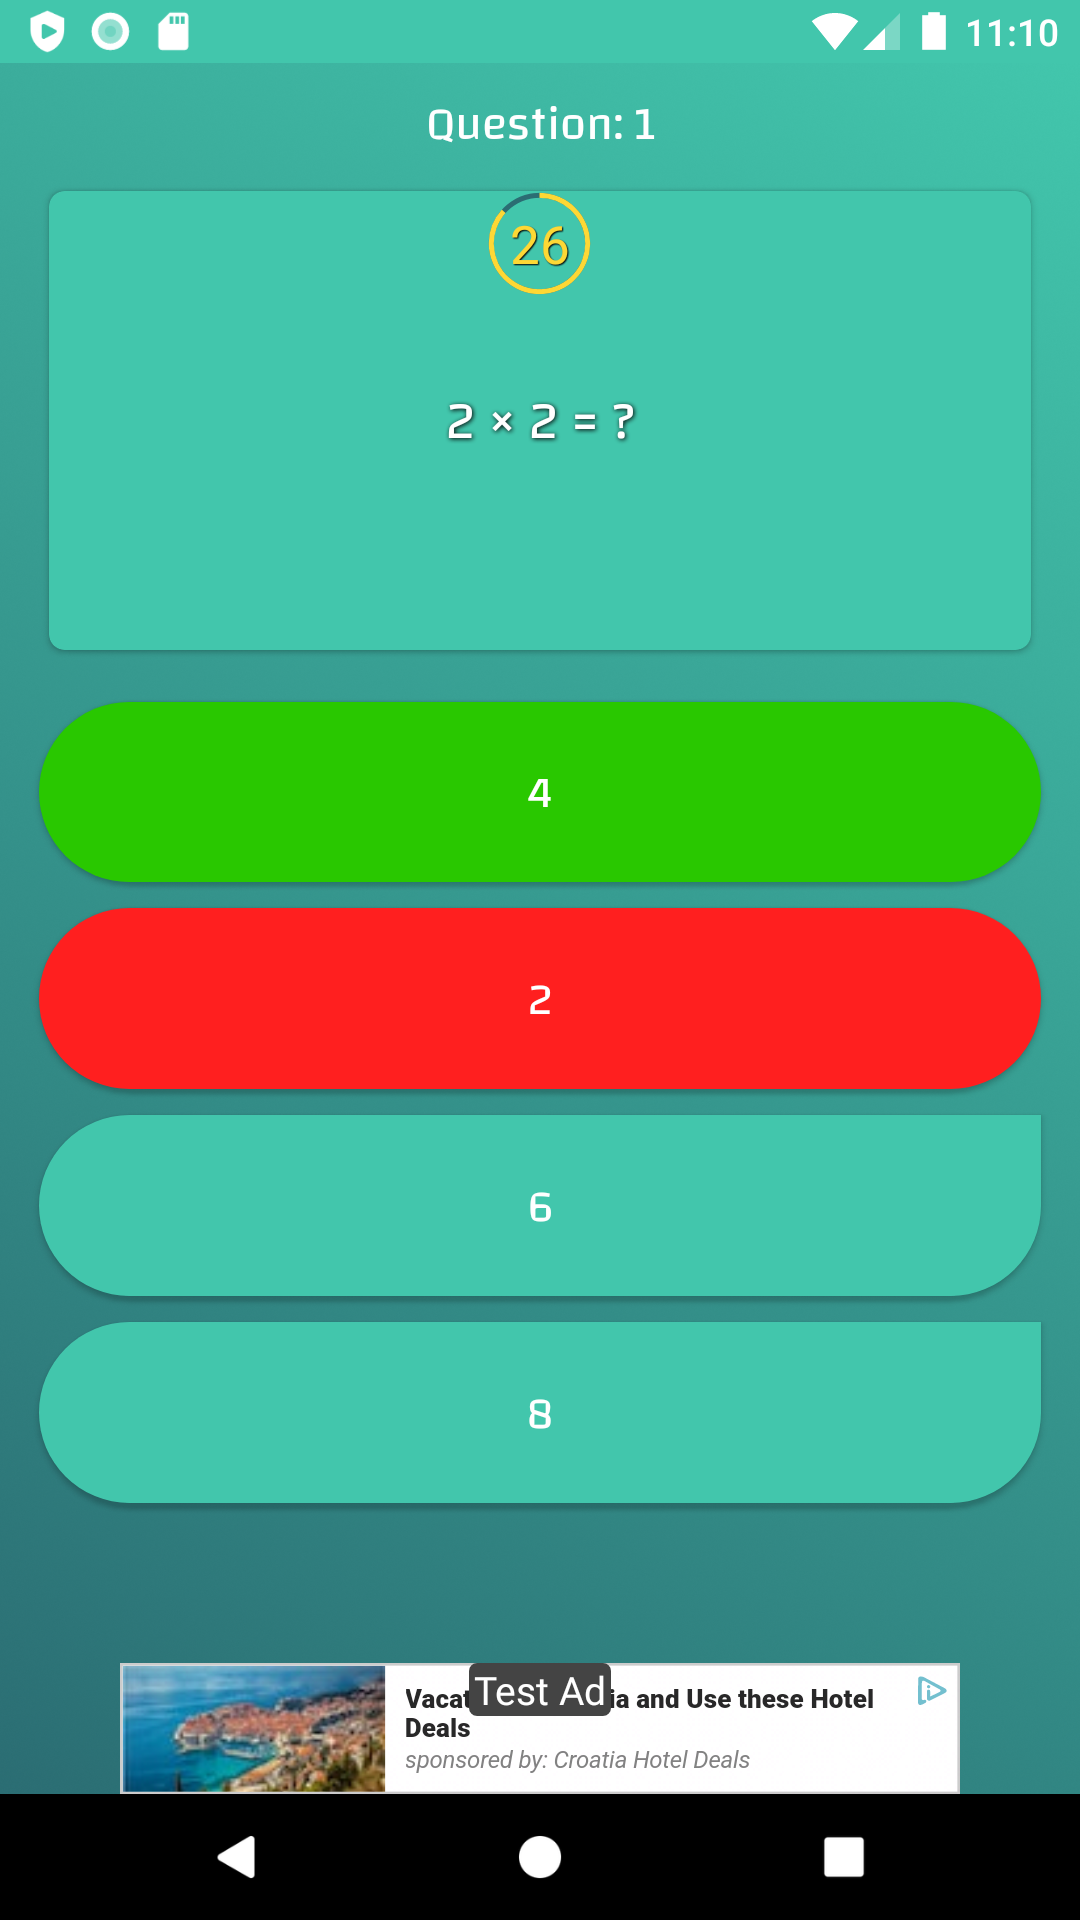 Quiz de Multiplicação Completa versão móvel andróide iOS apk